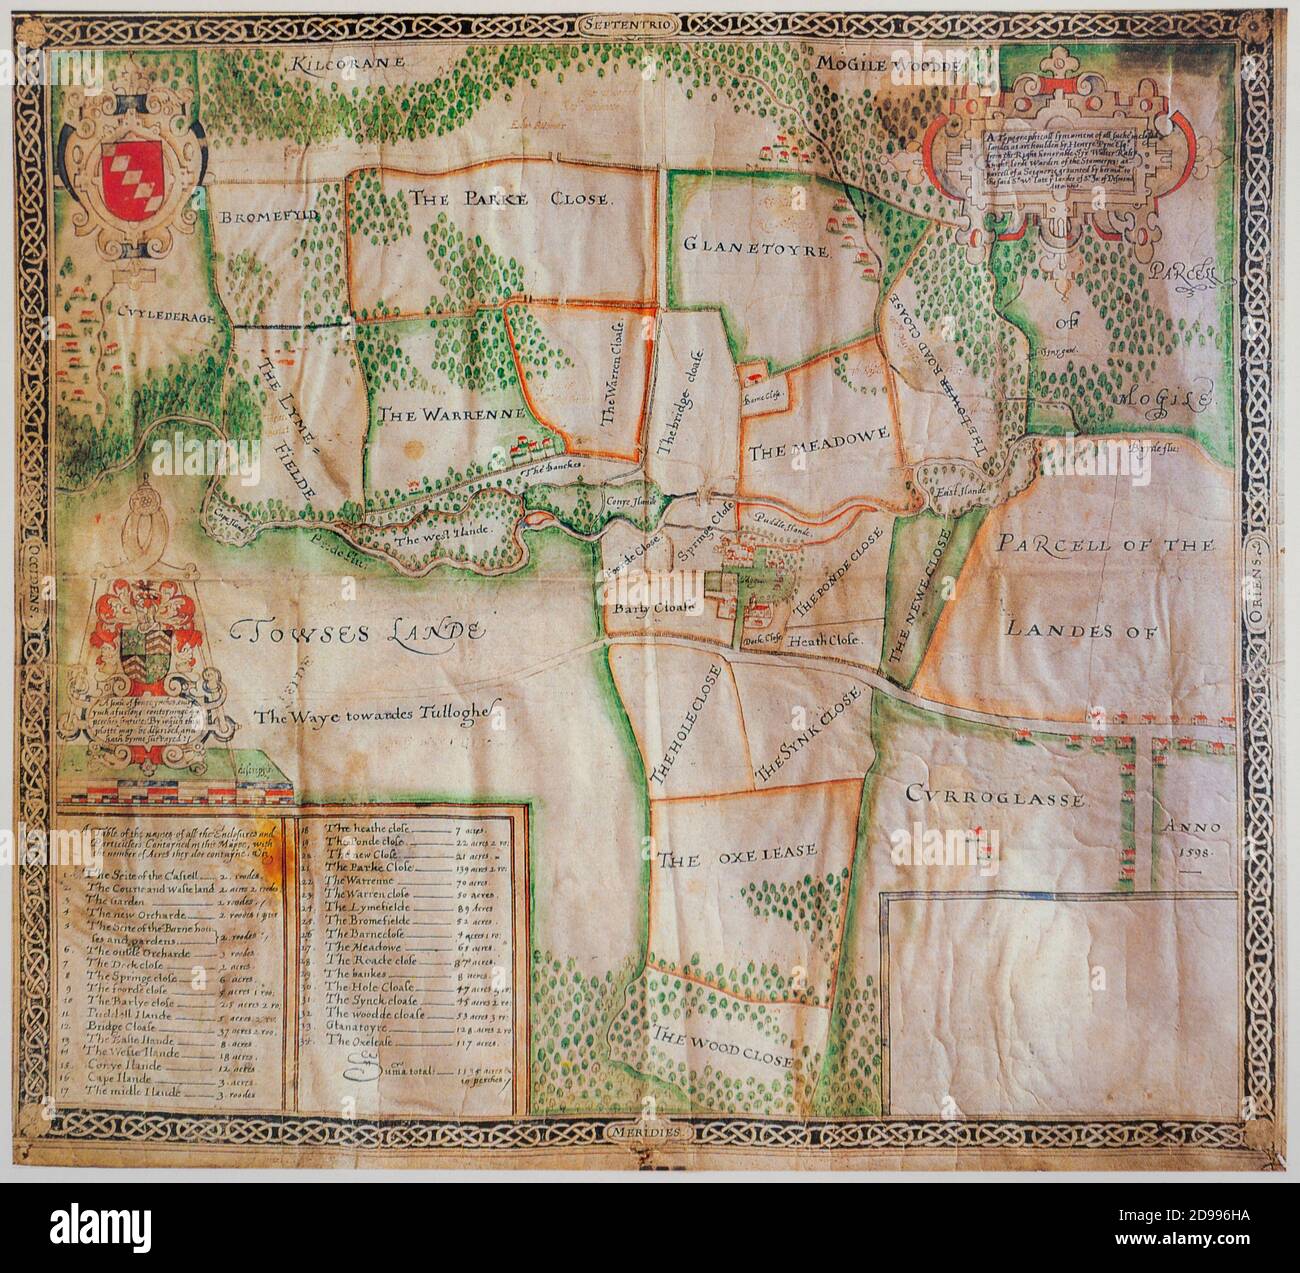 Carte ancienne du XVIe siècle des terres de Sir Walter Raleigh À Mogeely County Cork Irlande à partir de 1598 comme le plus tôt Carte de l'Irlande Banque D'Images